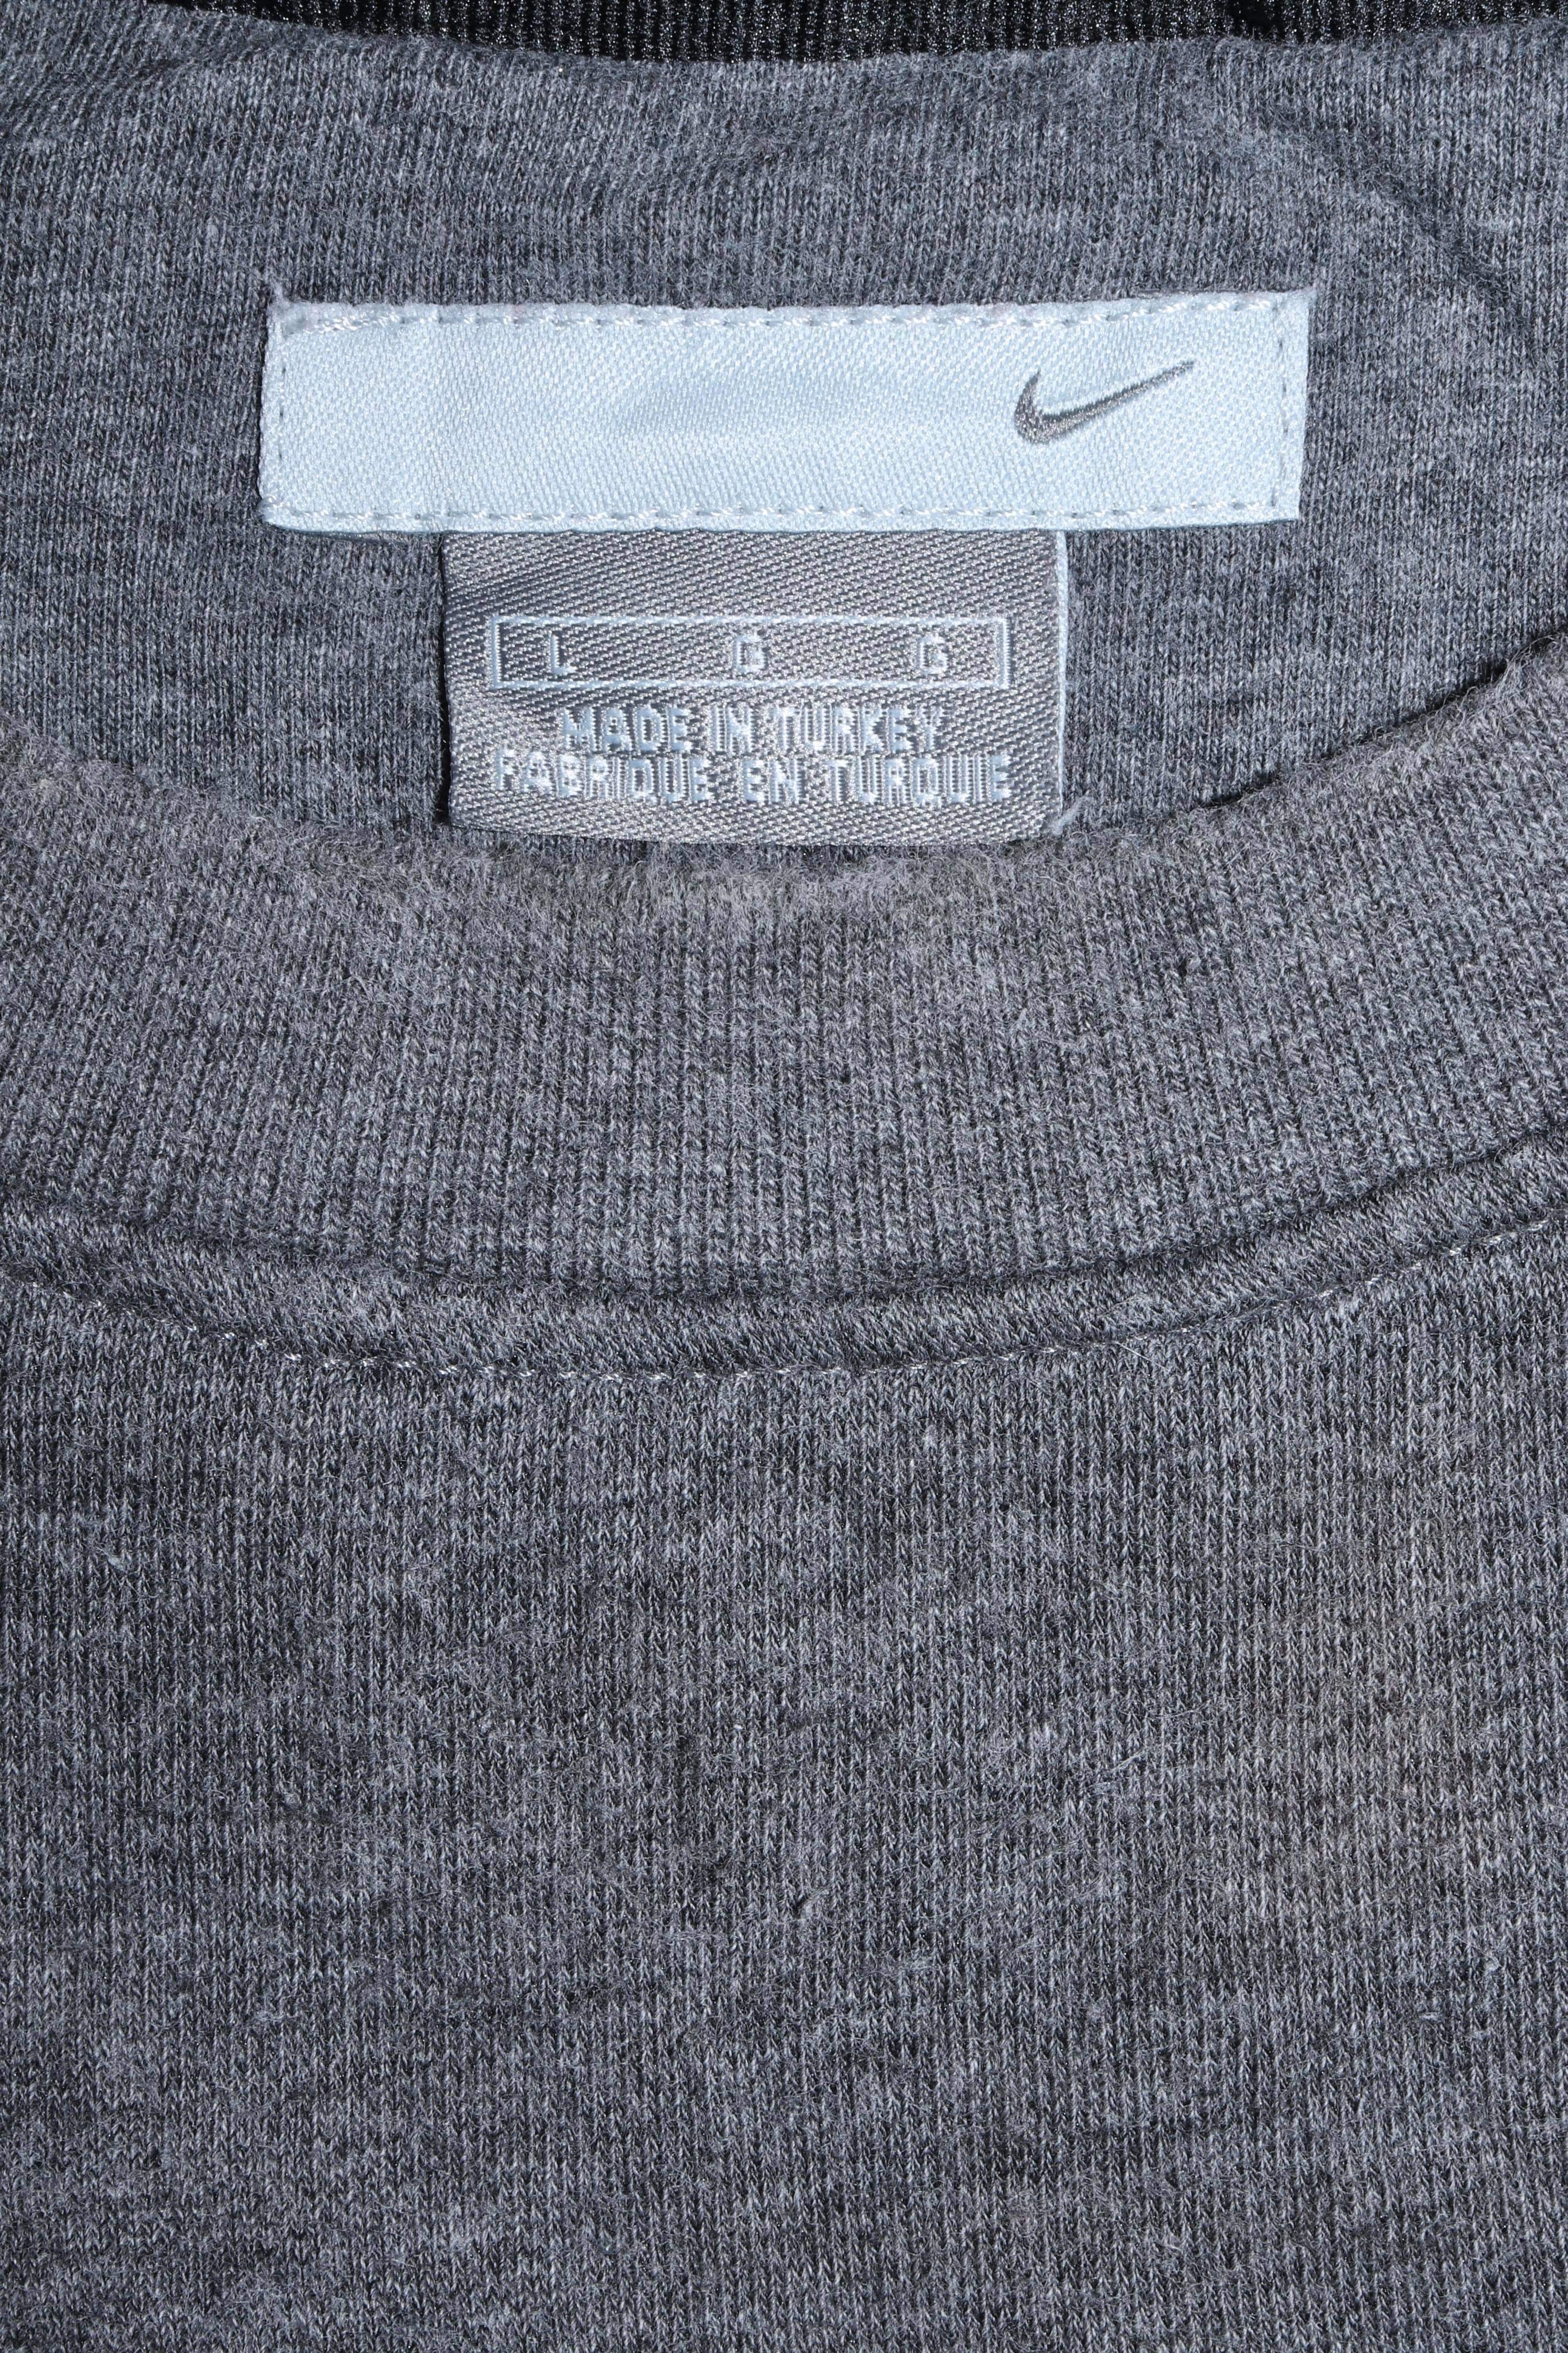 Vintage Nike Embroidered Mini Swoosh Sweatshirt